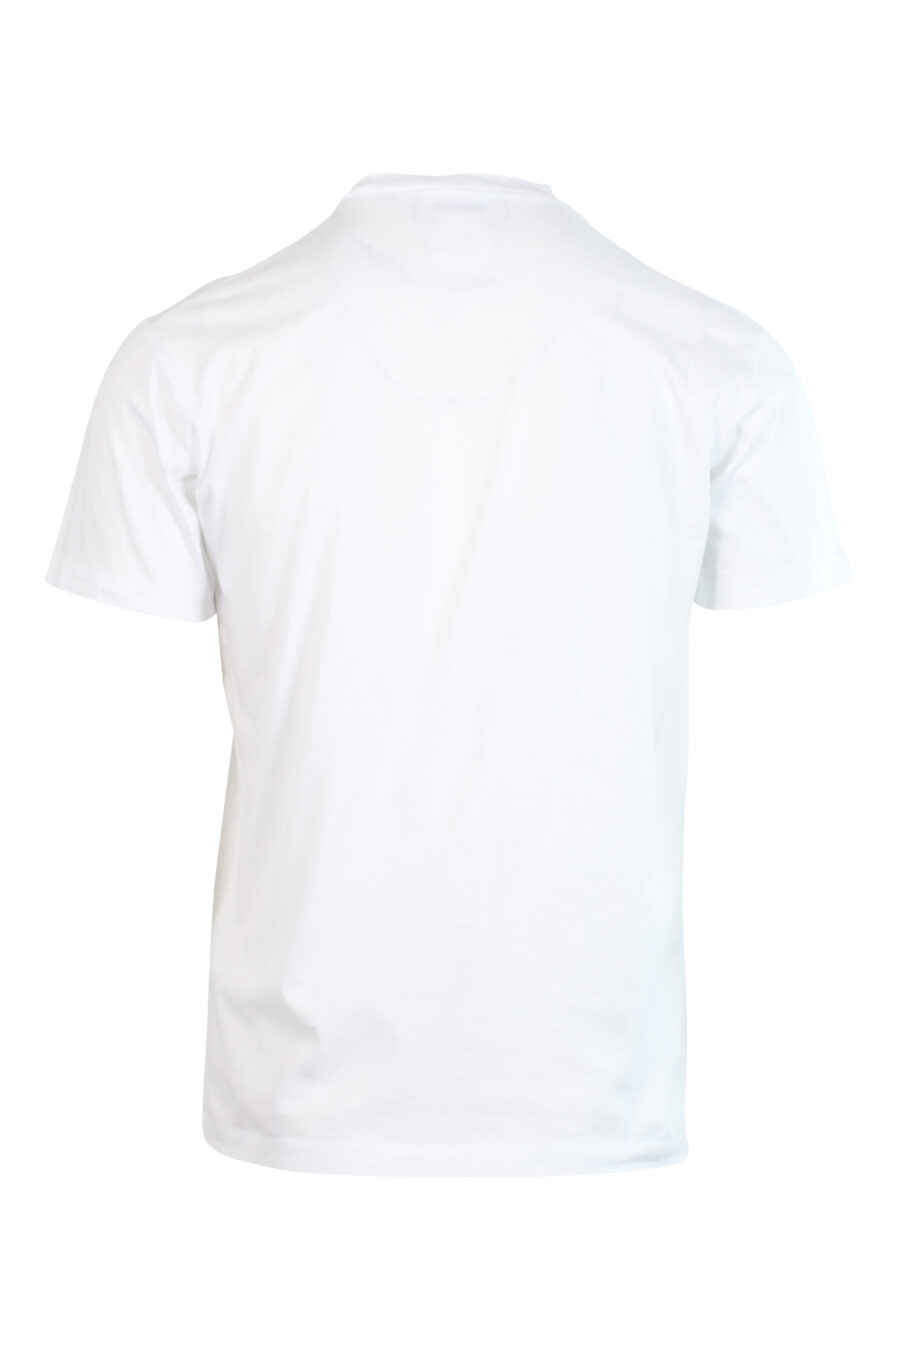 T-shirt blanc avec logo monochrome - 8052134946381 2